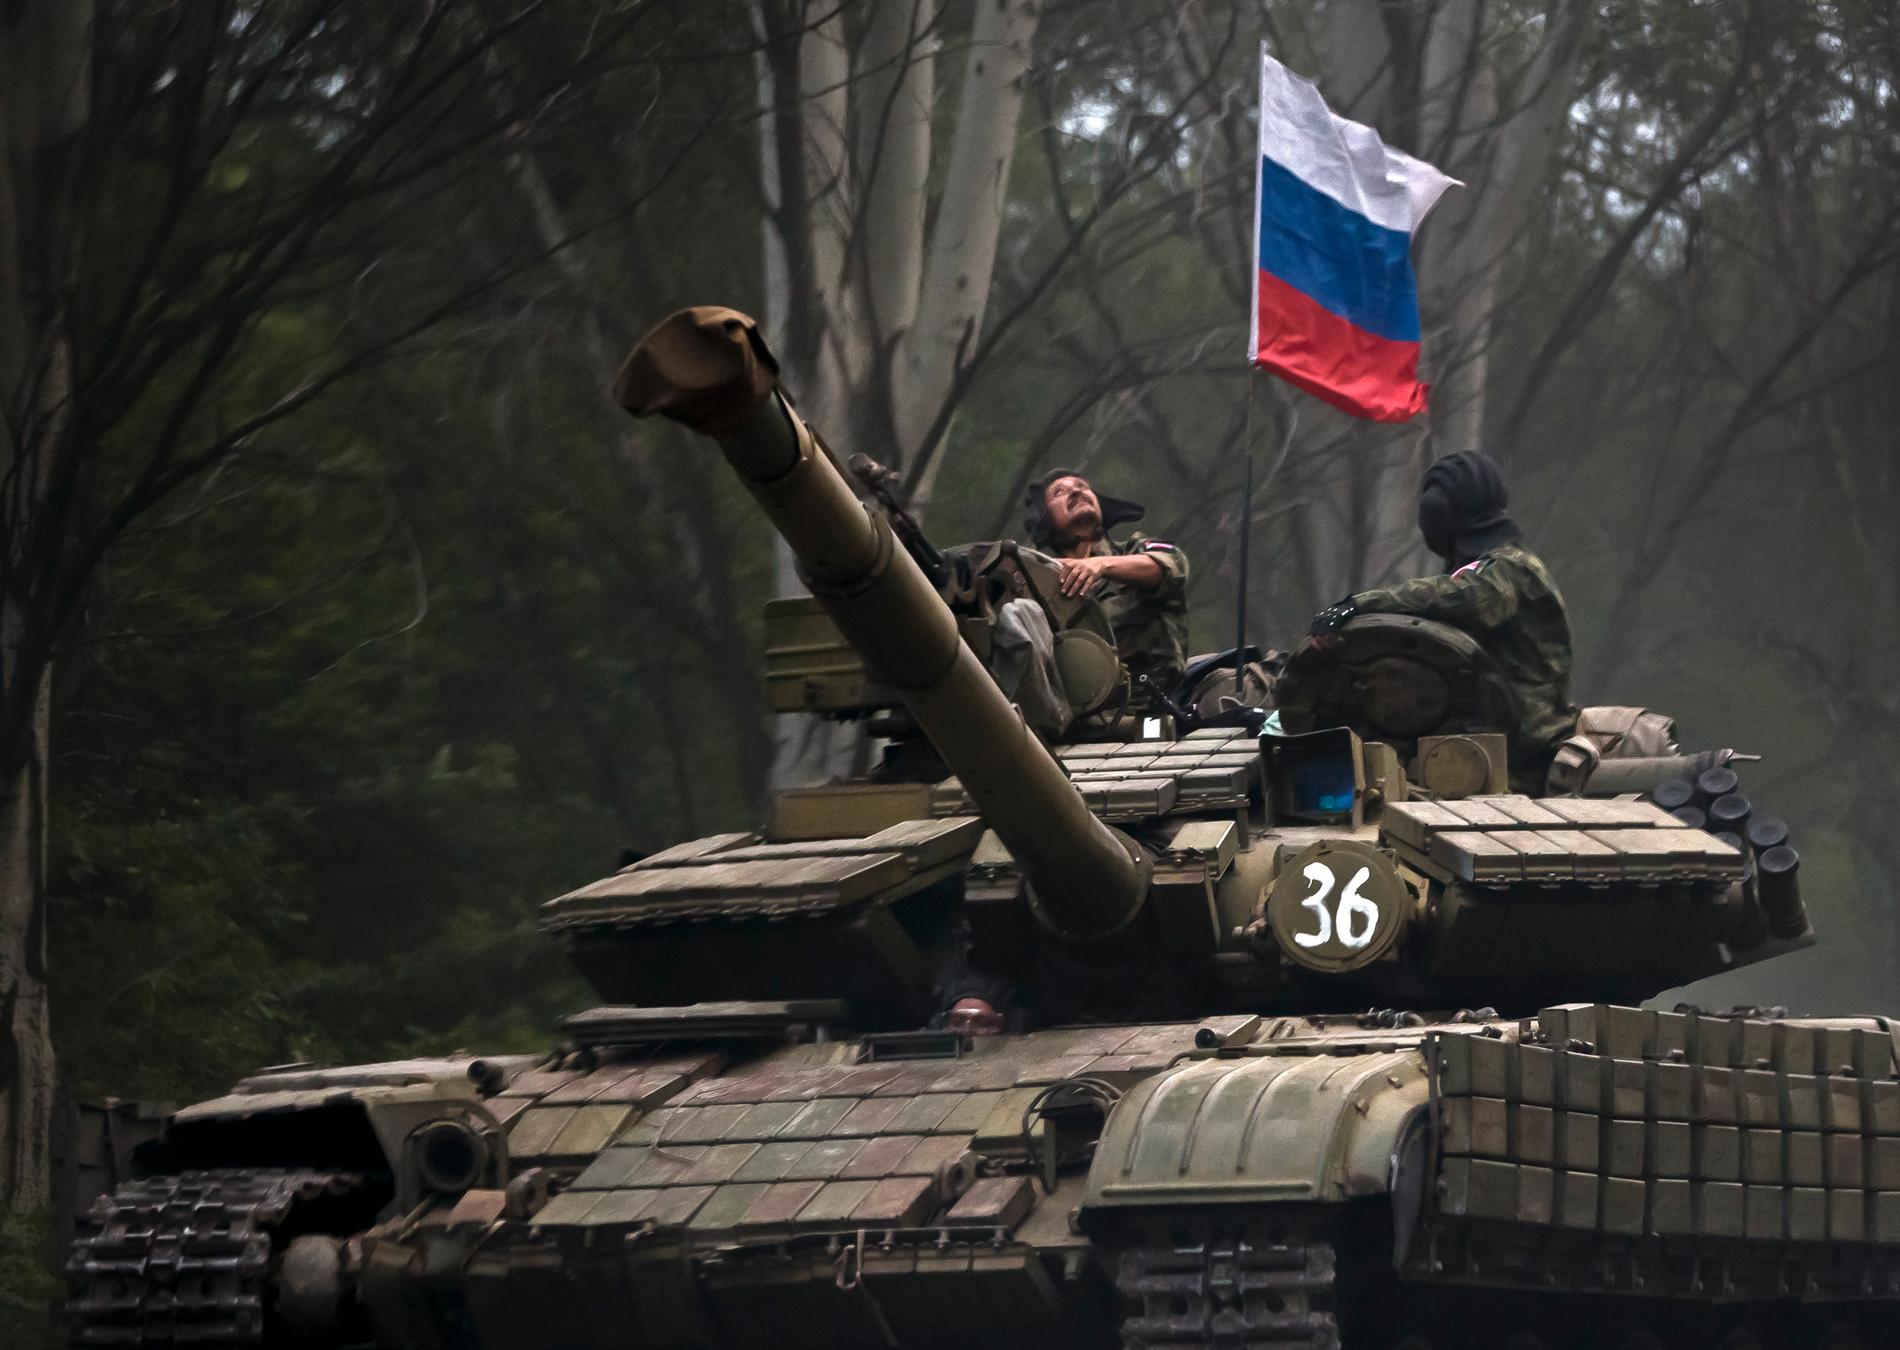 Russiskstøttede separatister på en stridsvogn i utbryterregionen Donetsk i Øst-Ukraina. Stridsvognen er utstyrt med et russisk flagg. 